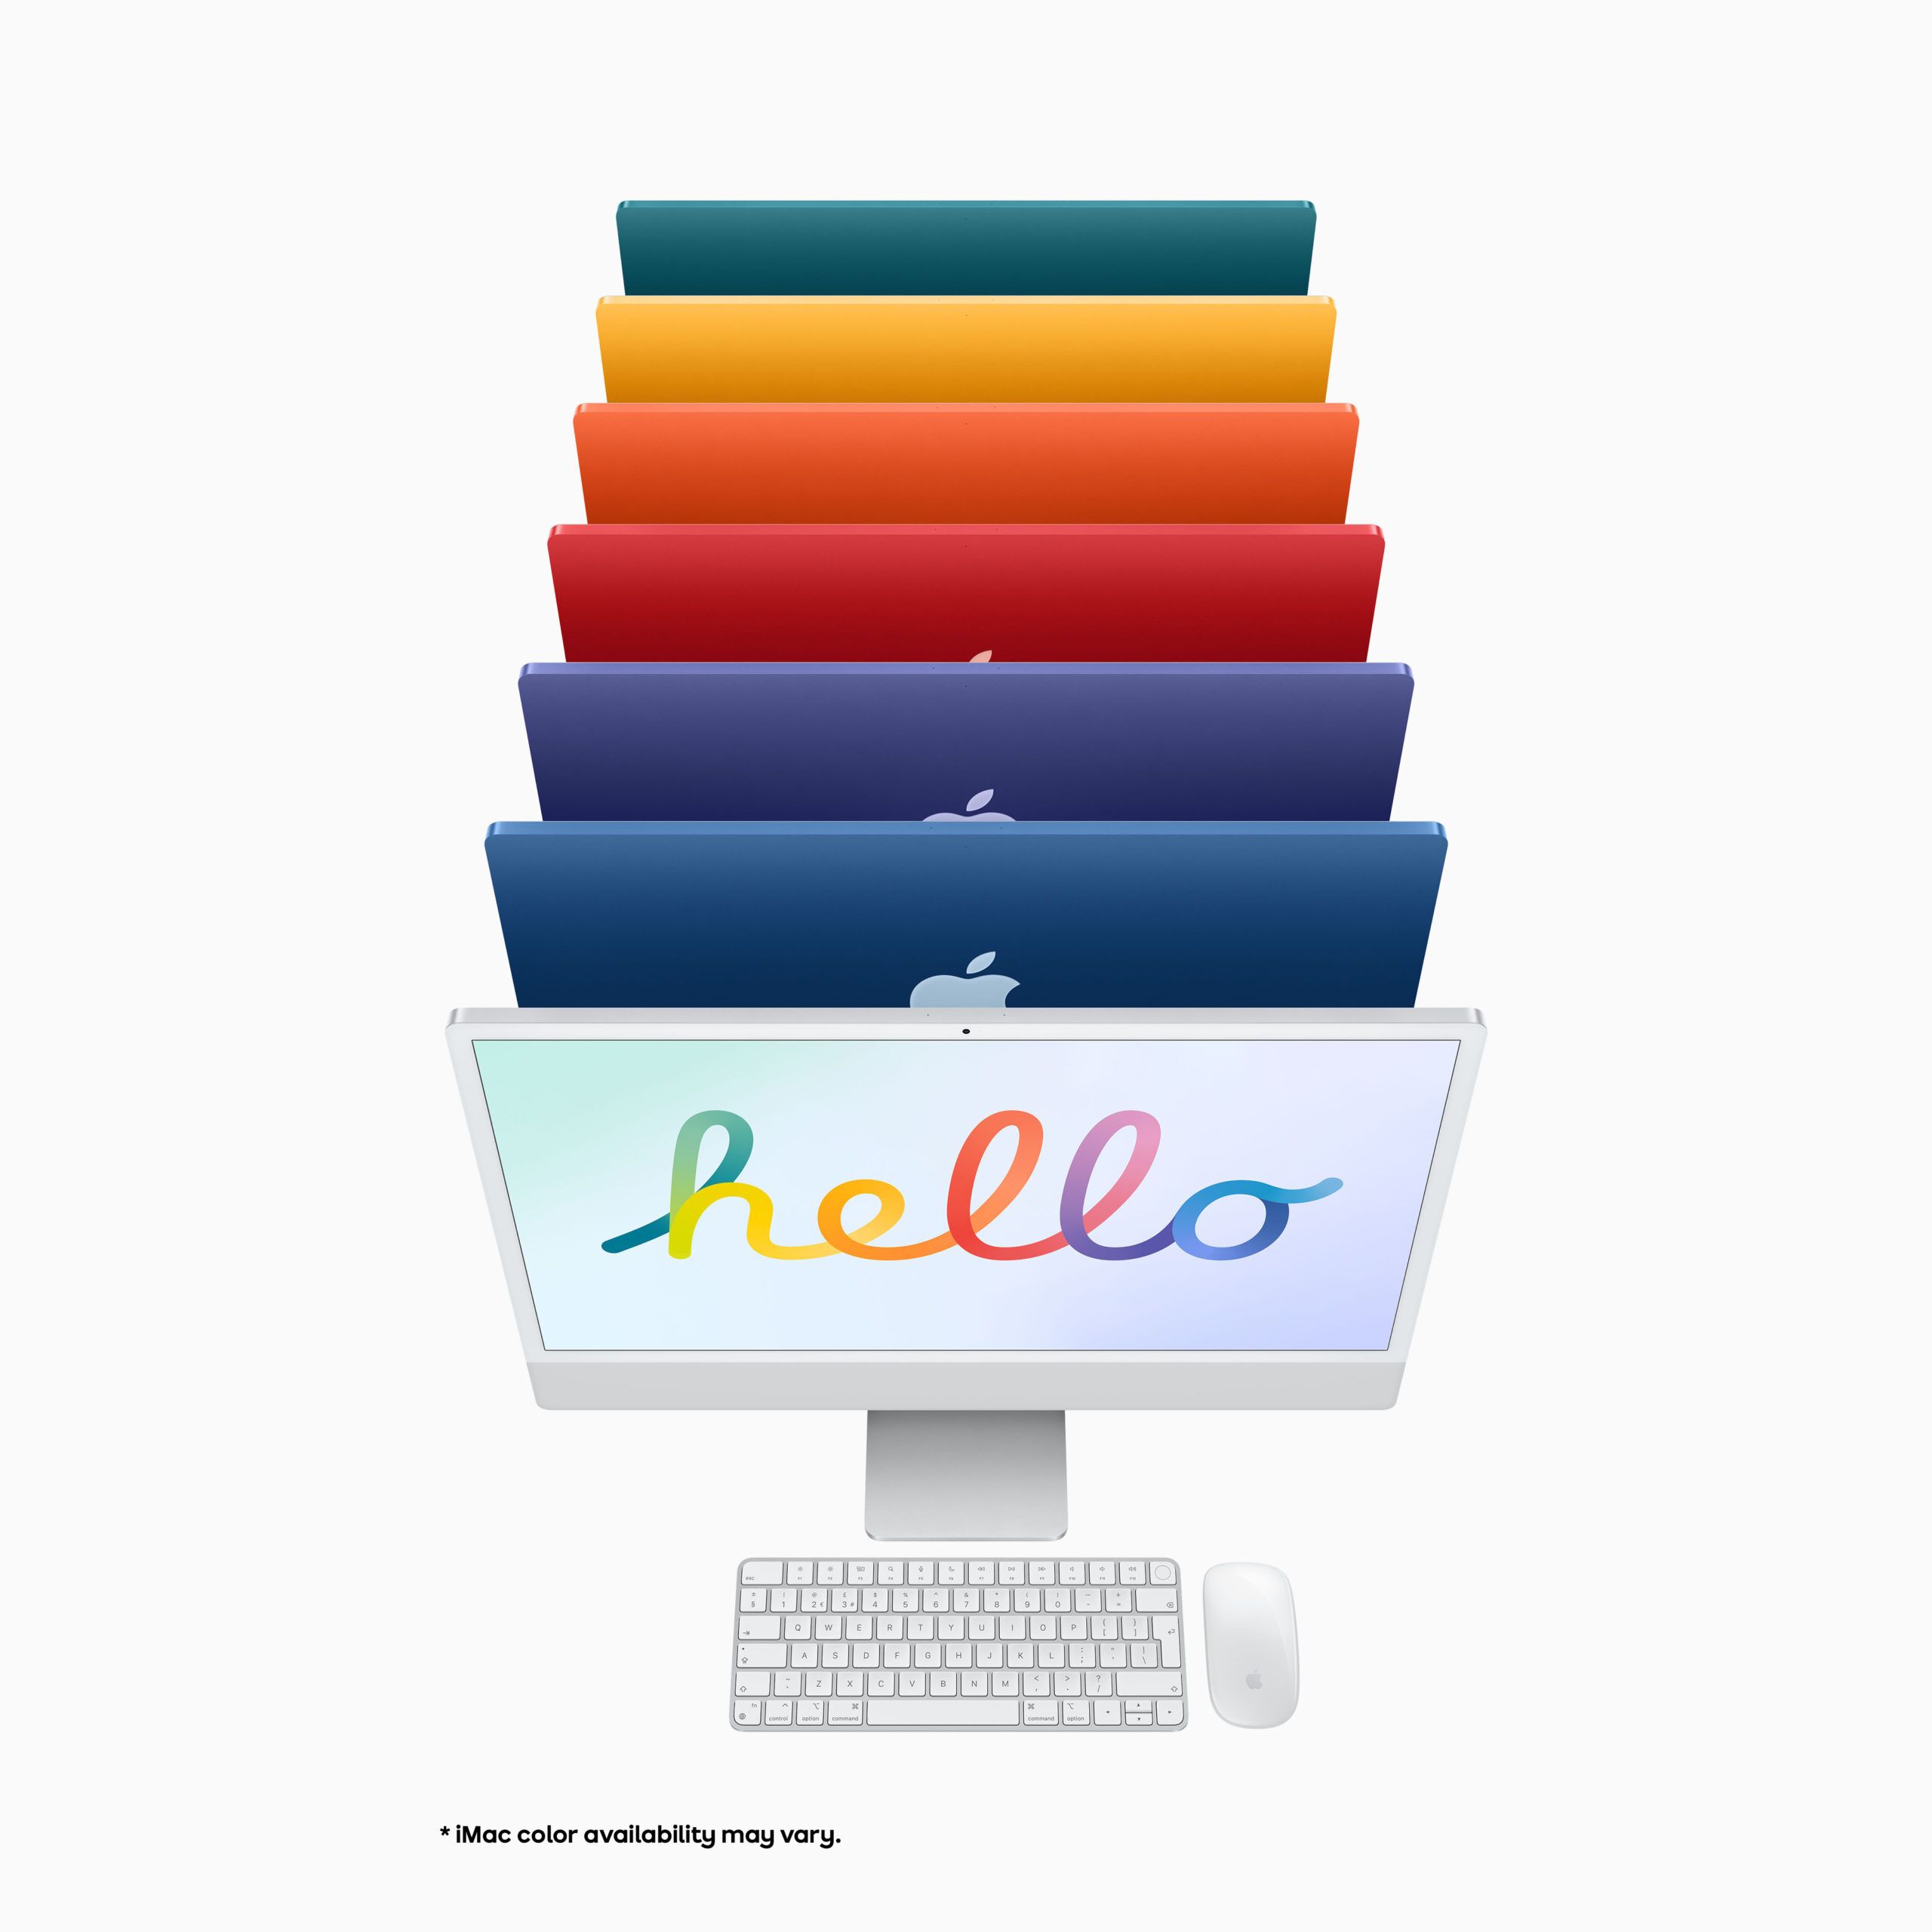 Blue Apple iMac 07 scaled 1